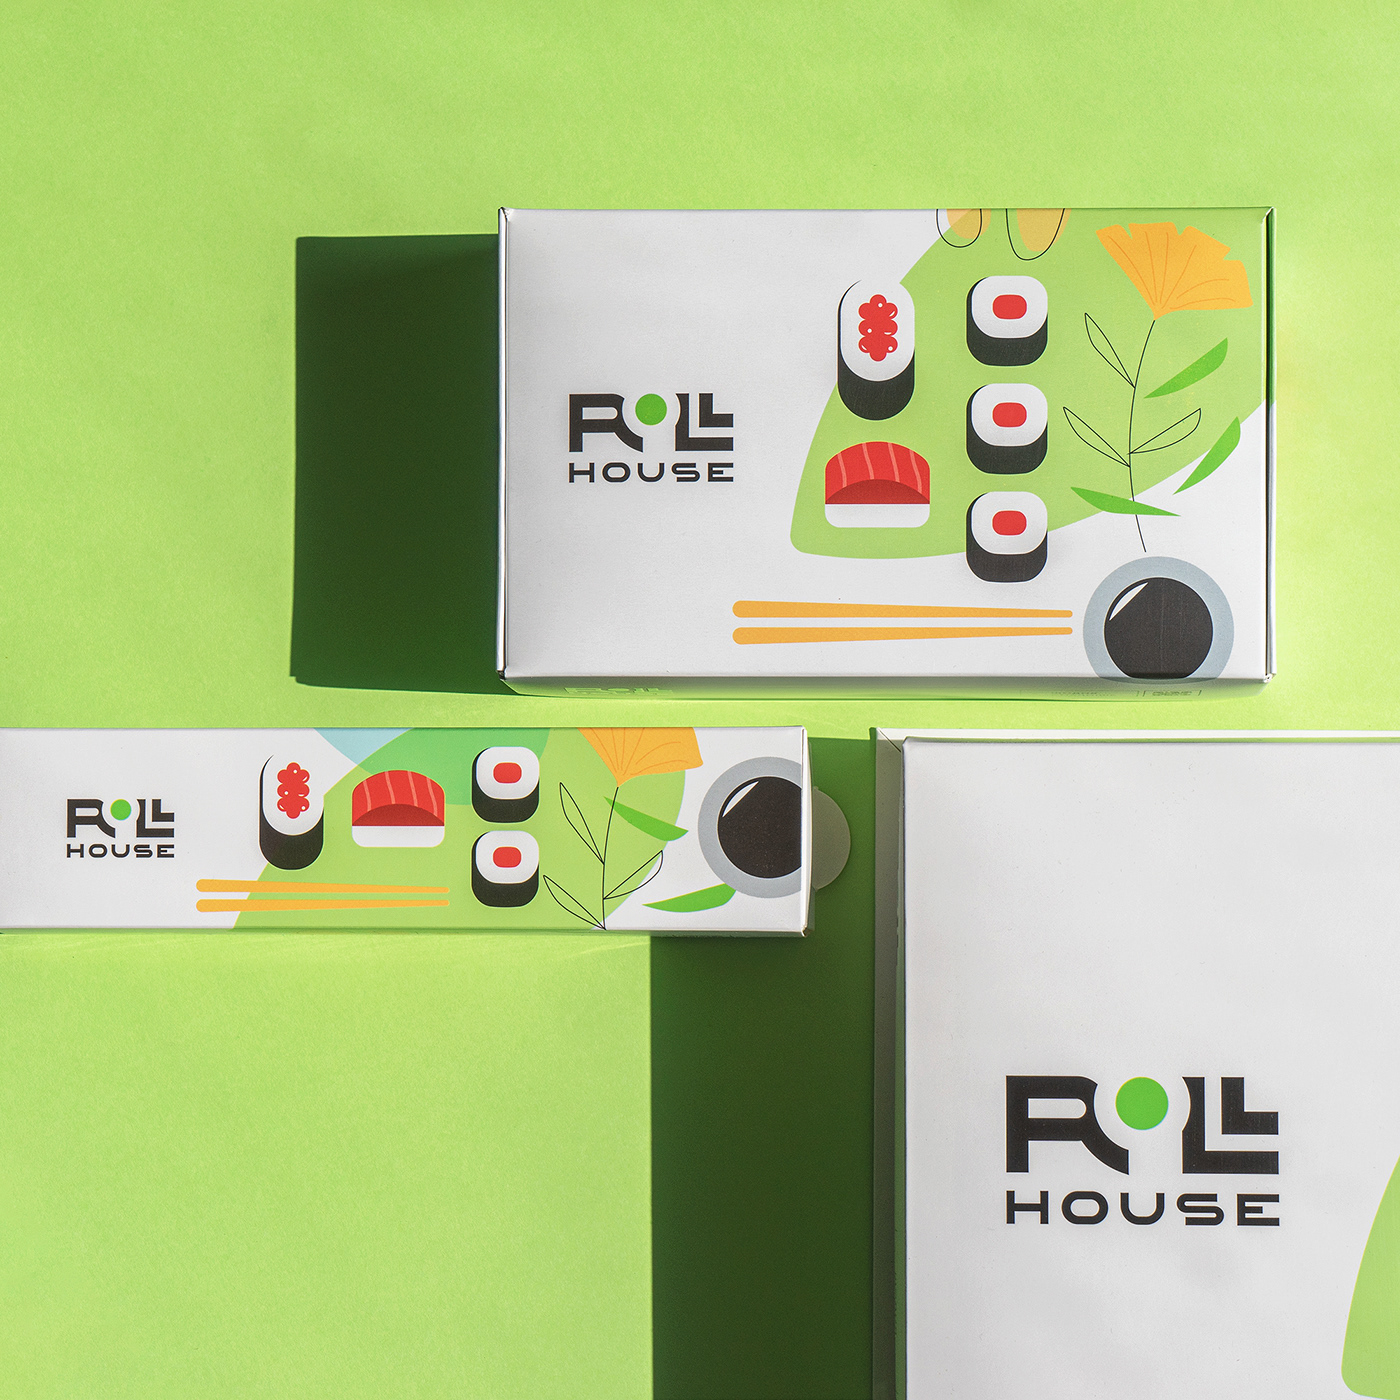 清新的绿色！ROLL HOUSE快餐品牌和包装设计